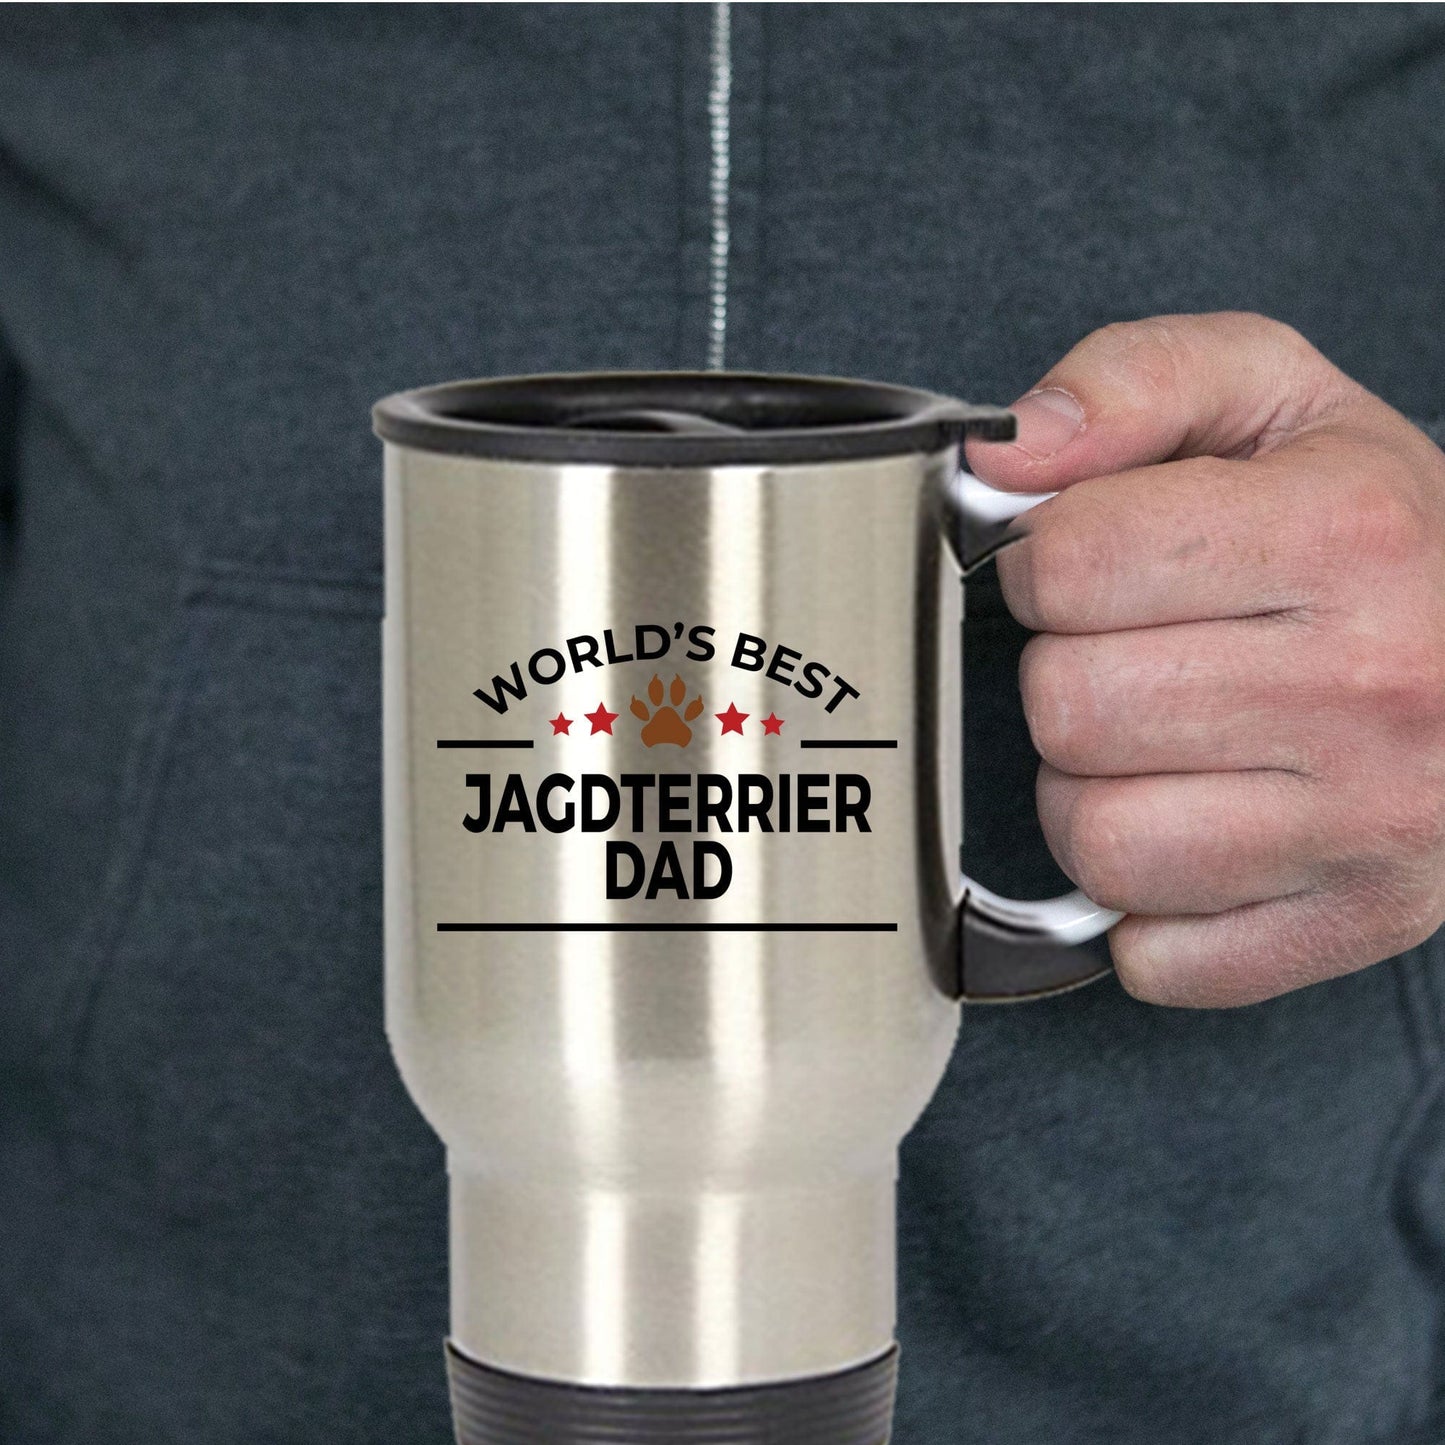 Jagdterrier Dog Dad Travel Mug